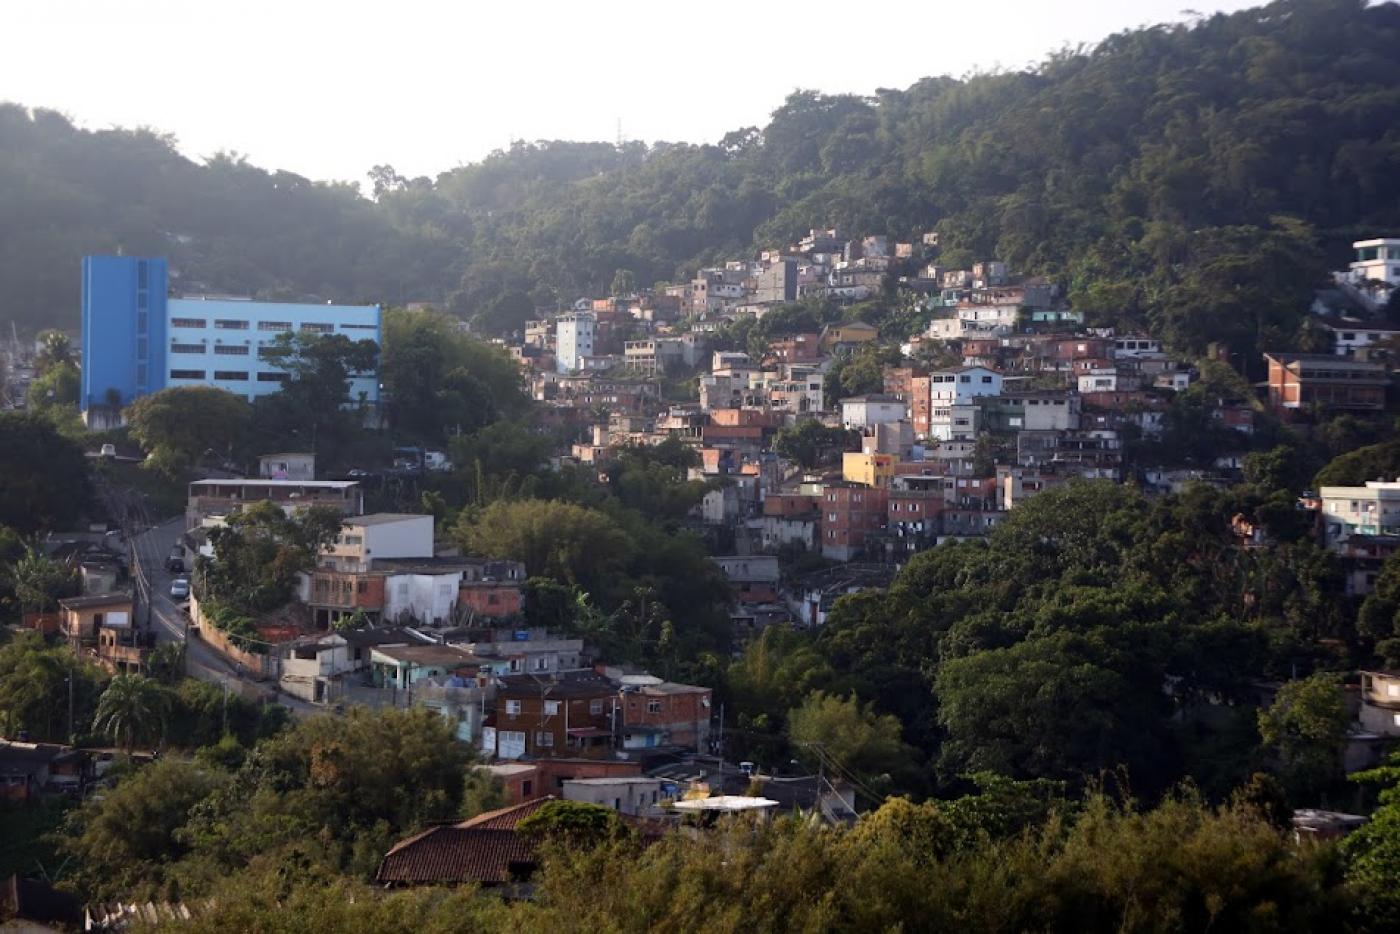 vista geral do morro com casas e uma edificação principal que é uma escola, à esquerda. #paratodosverem